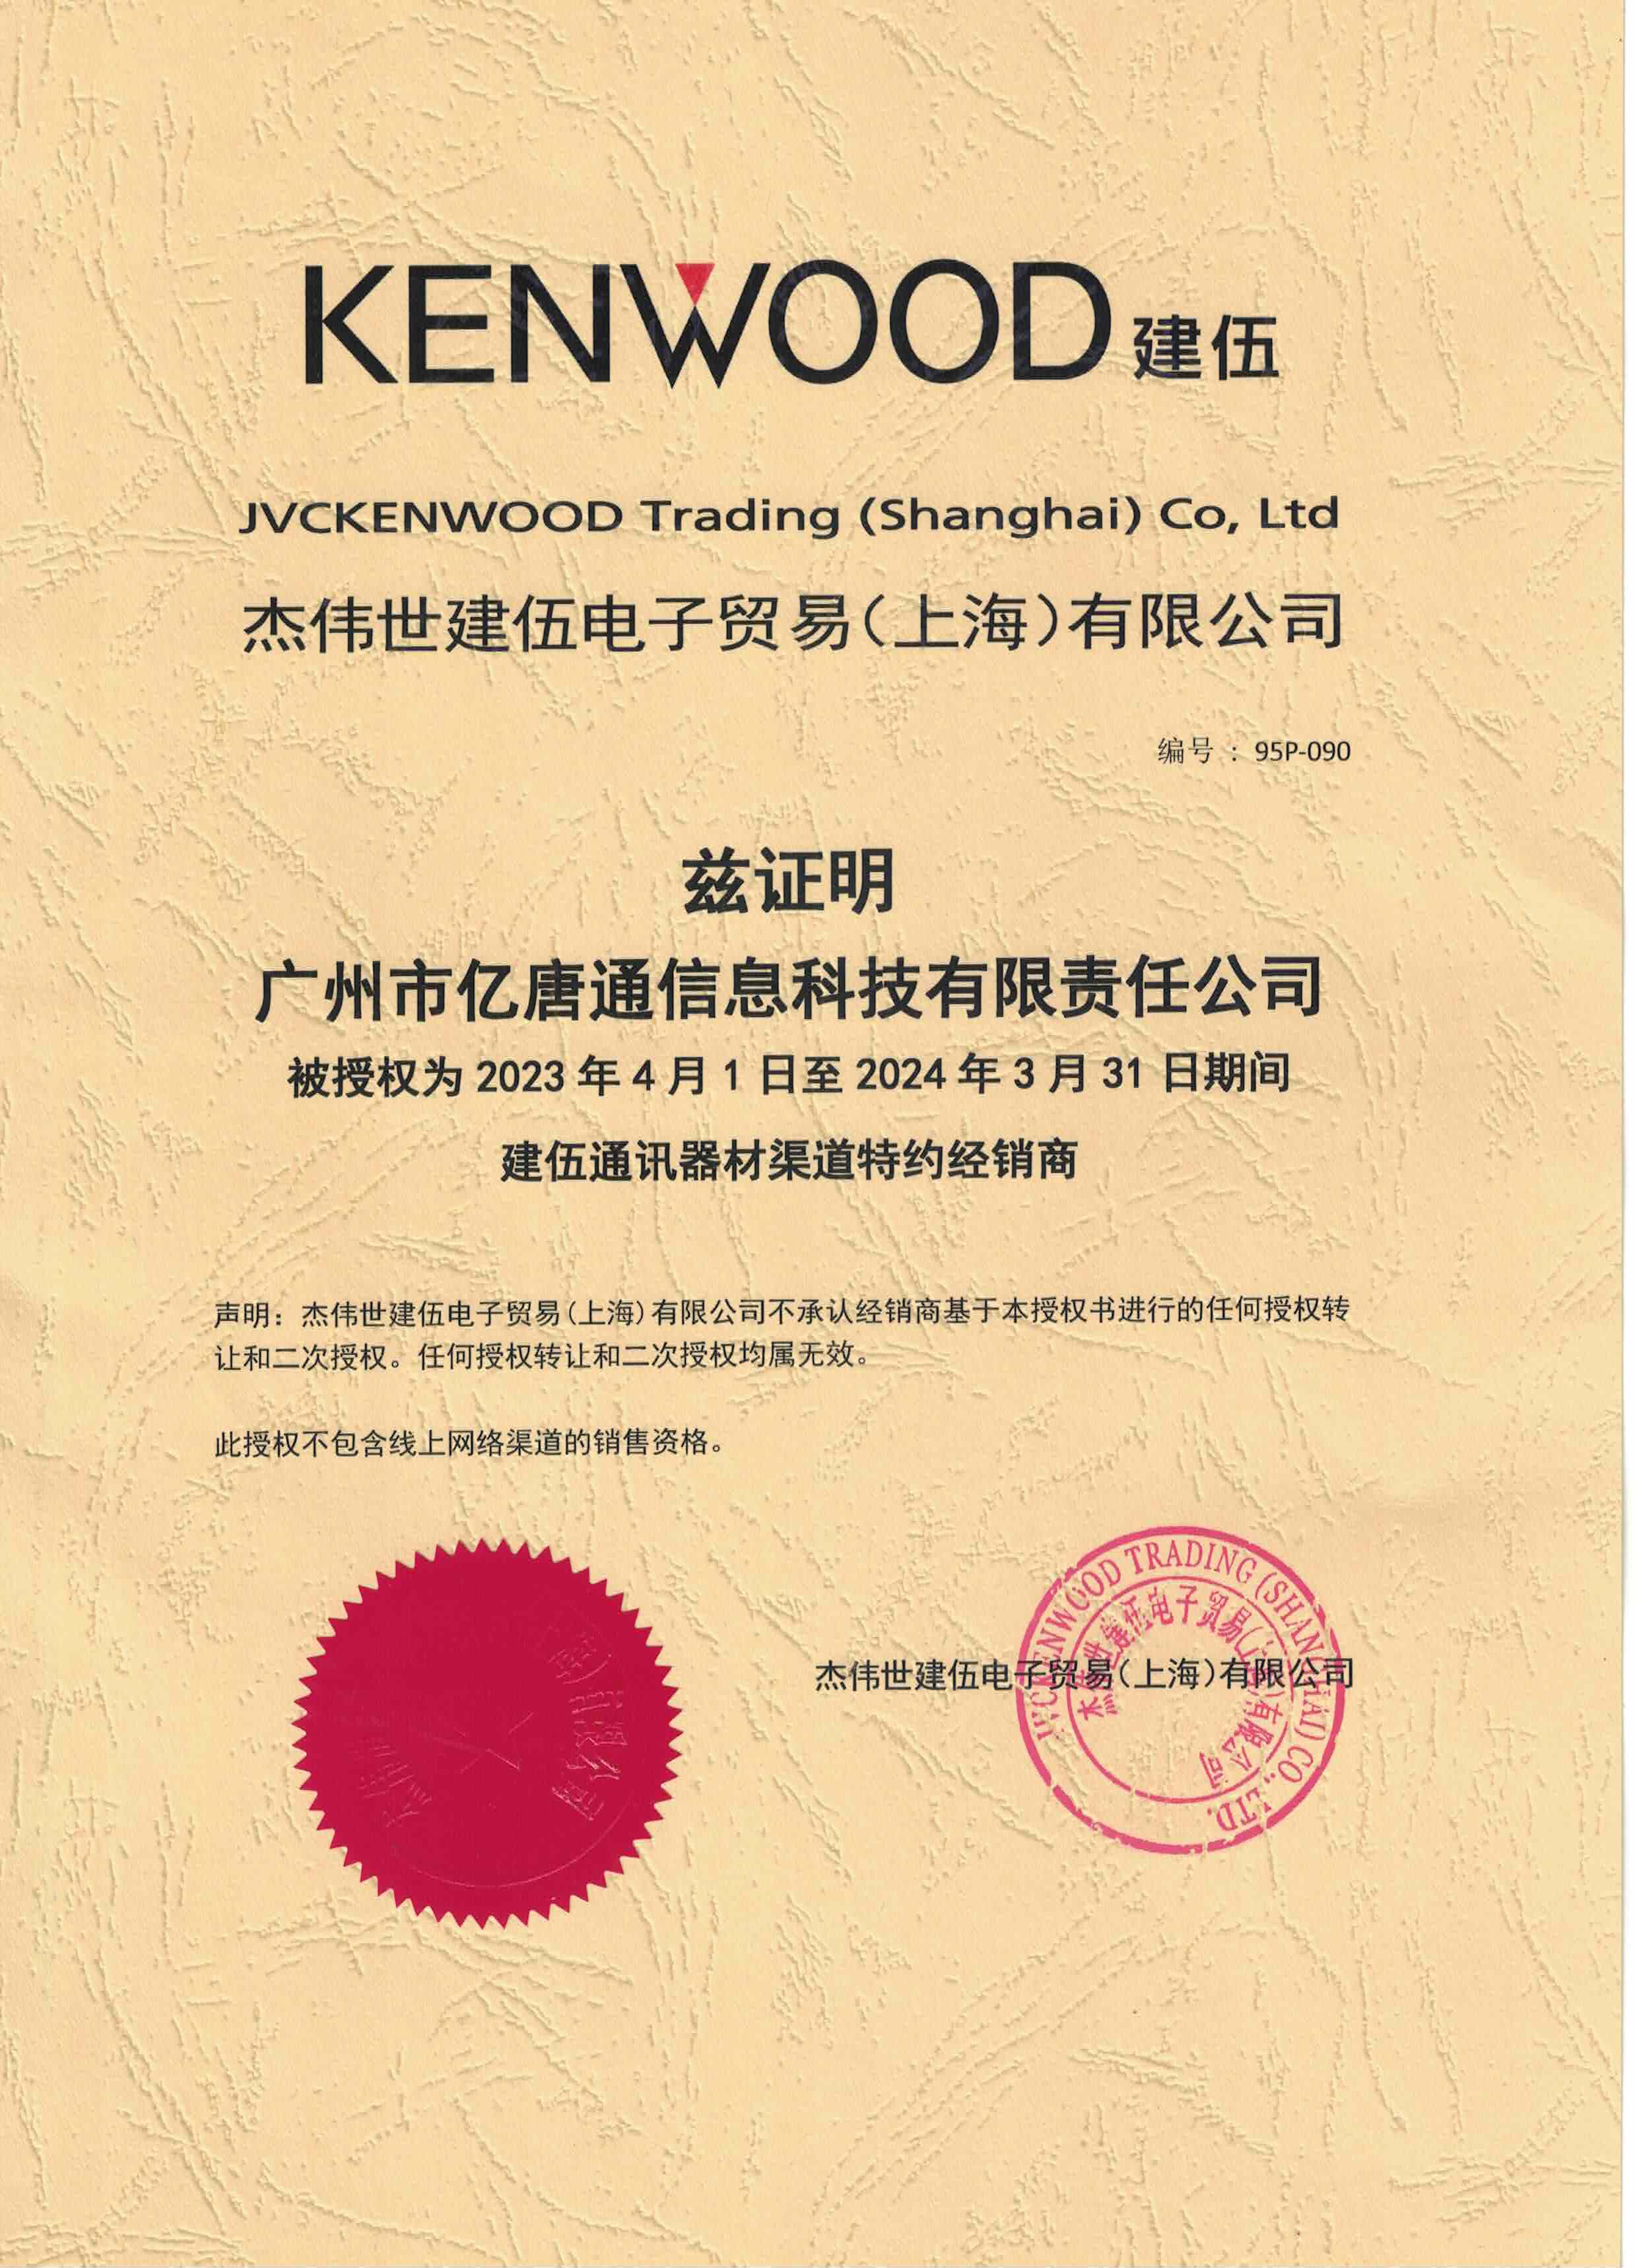 Kenwood Agency Certificate 2022-2023gnr